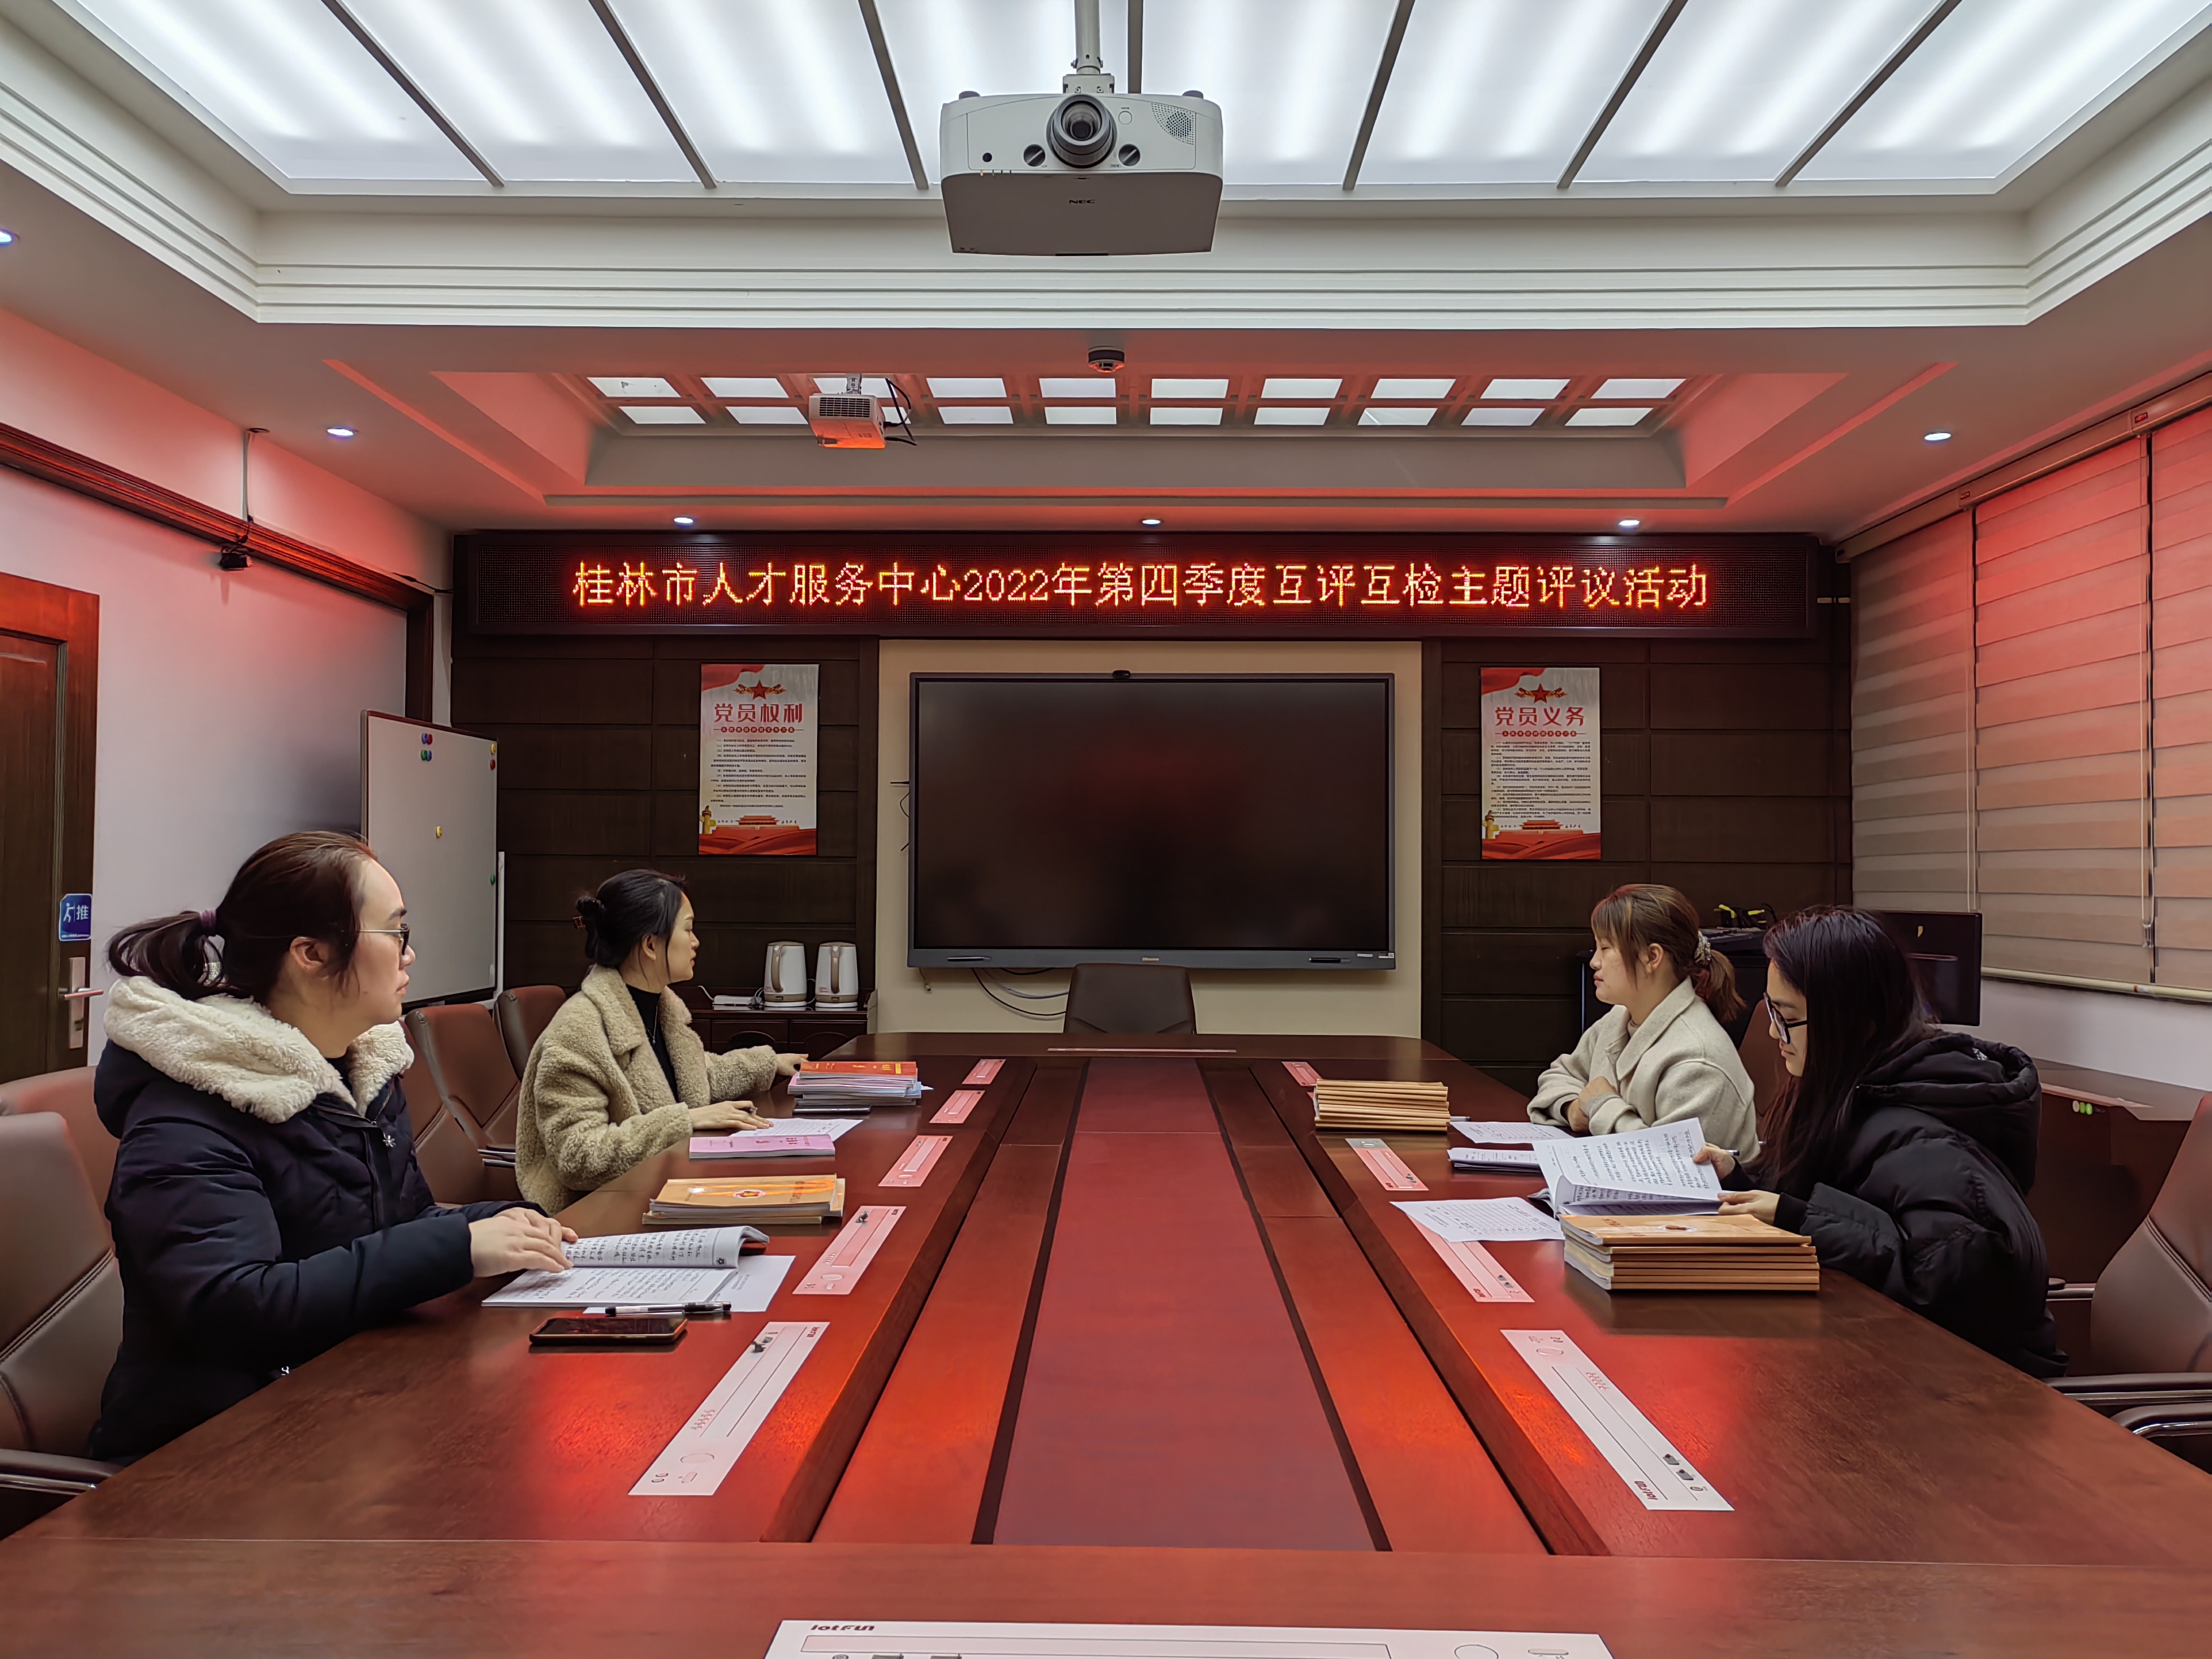 桂林市人才服务中心2022年第四季度互评互检主题评议活动